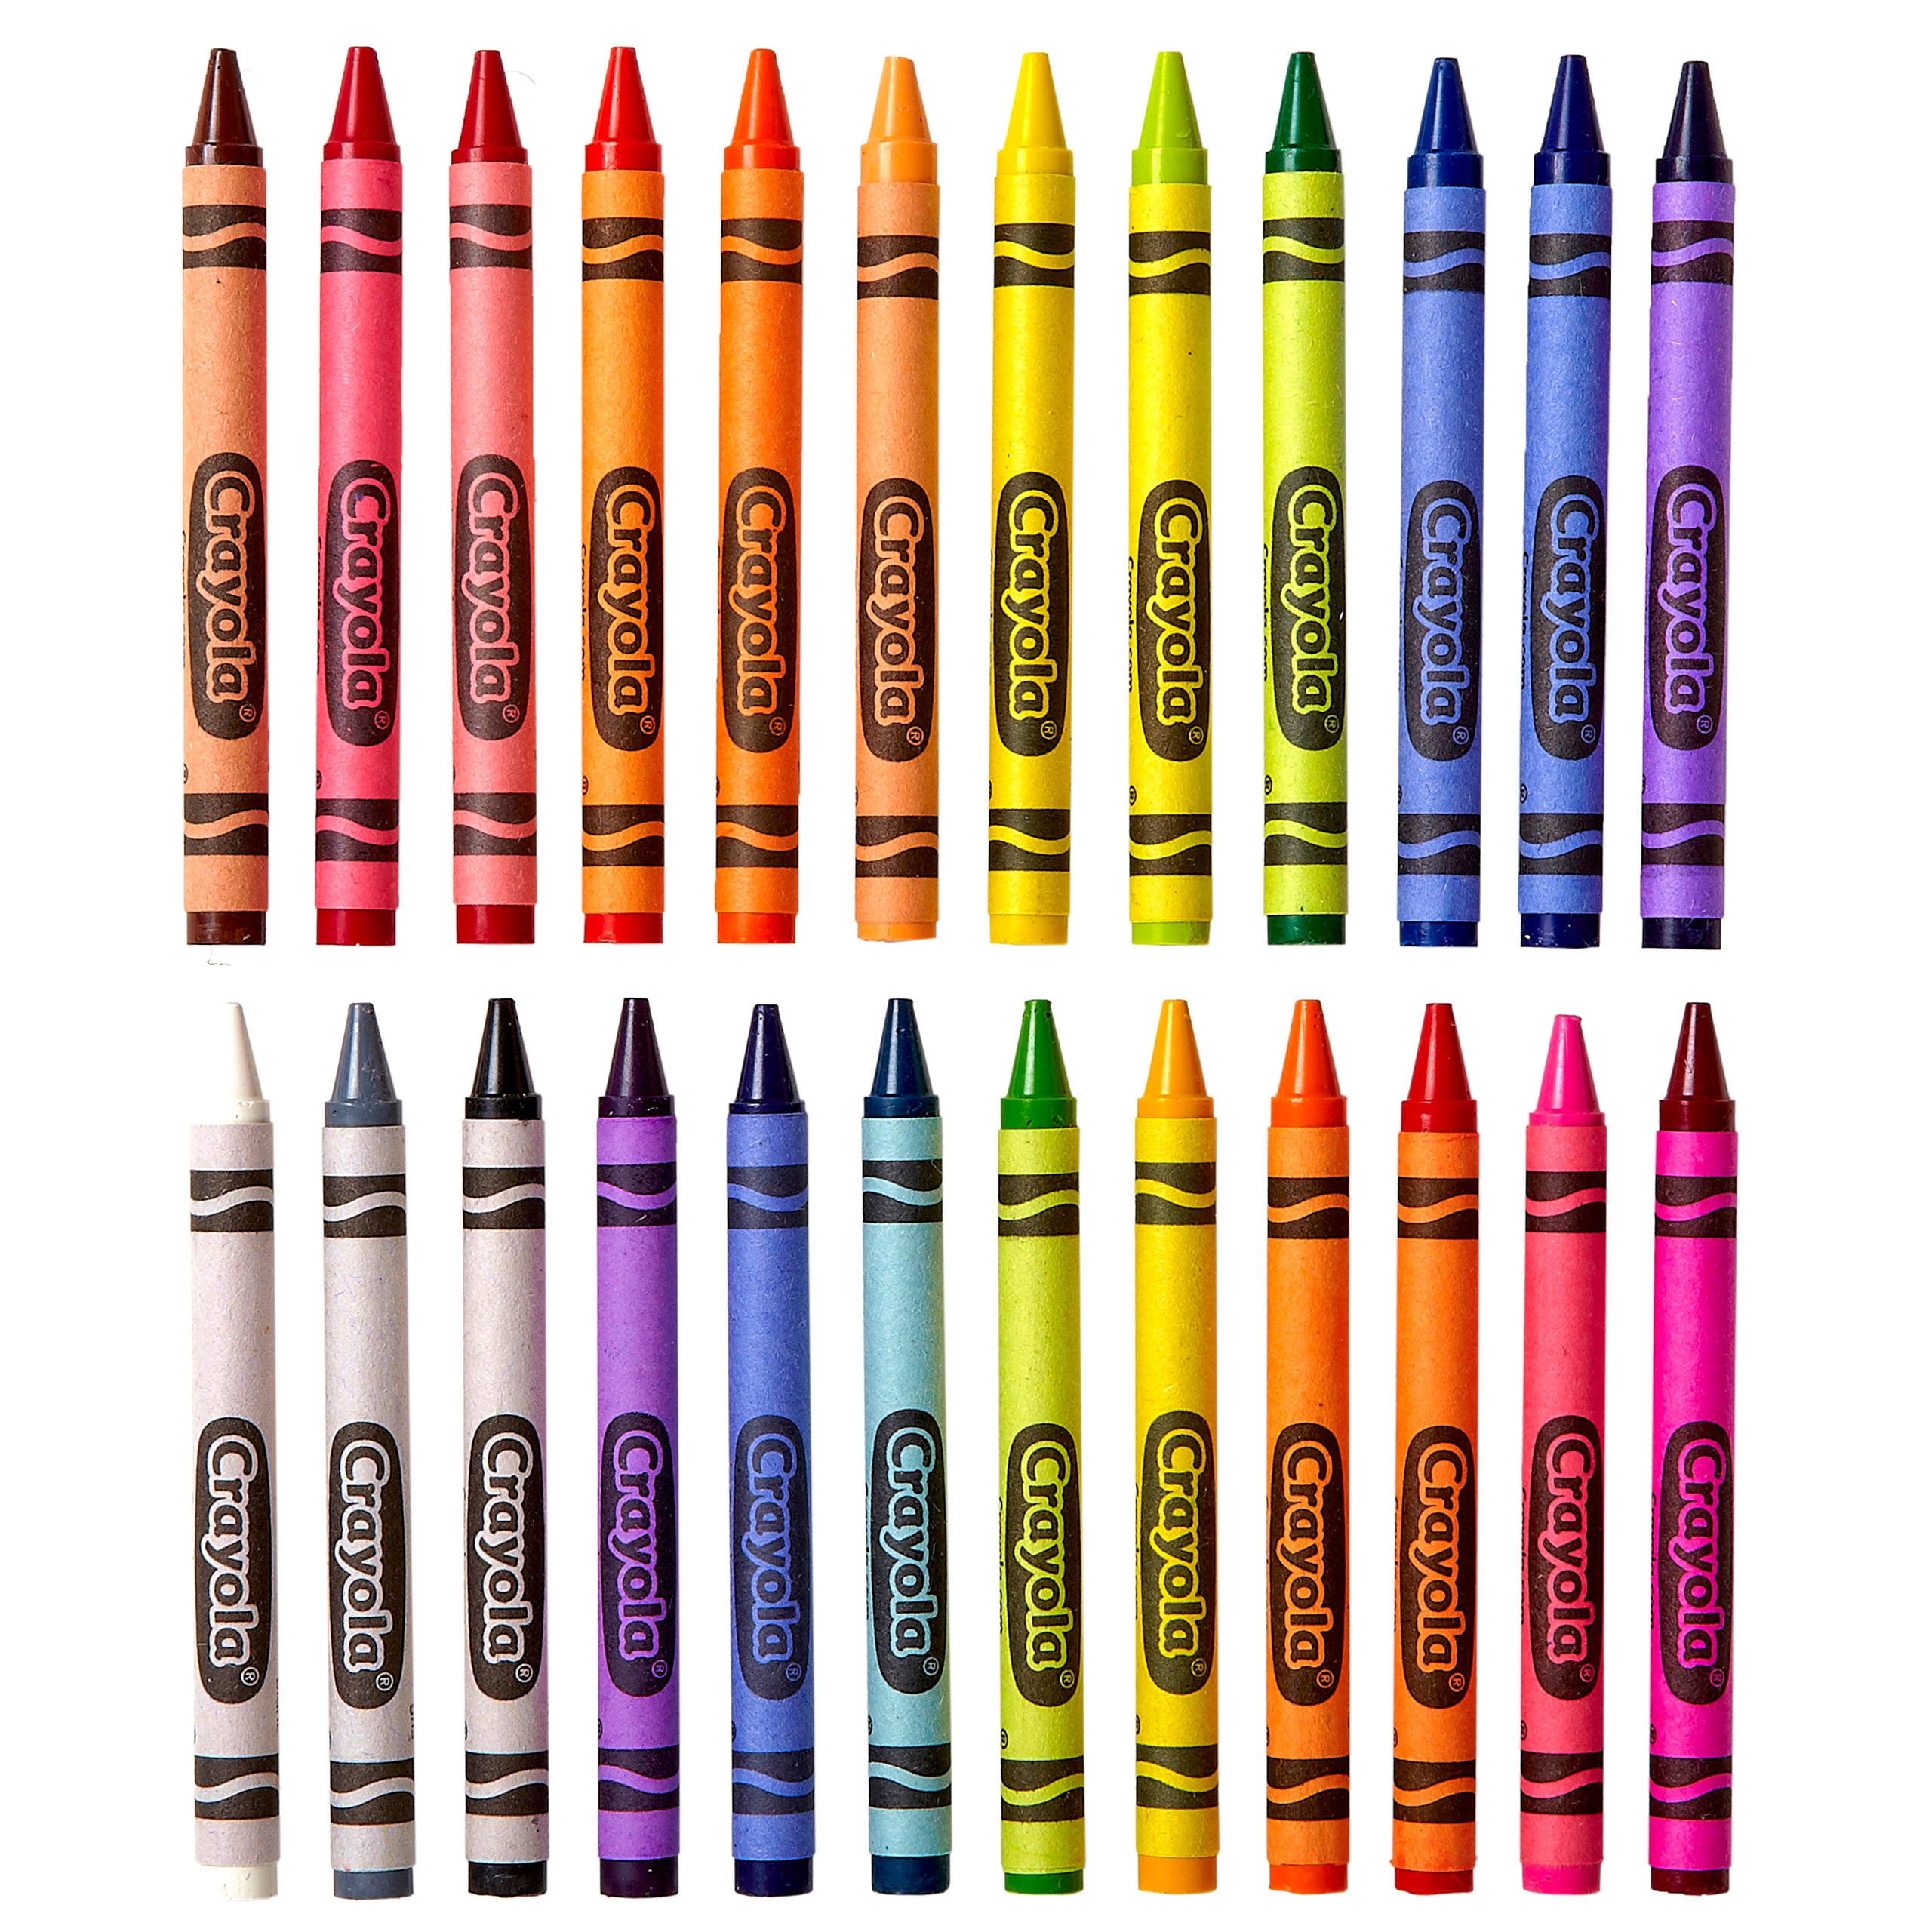 crayola crayons 24